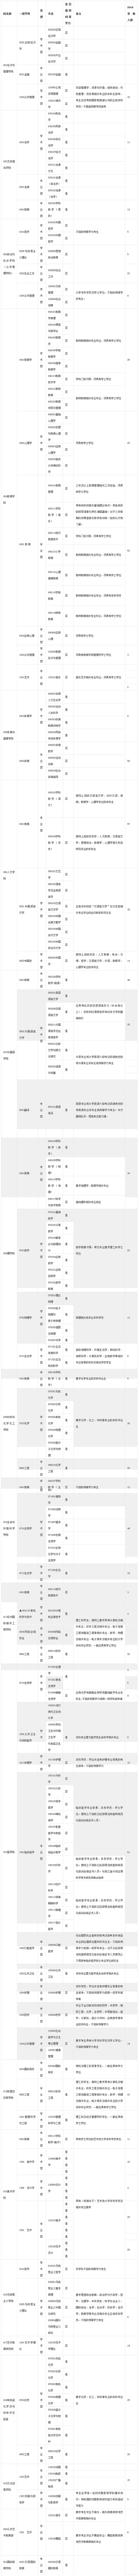 杭州师范大学2019考研专业目录已经发布